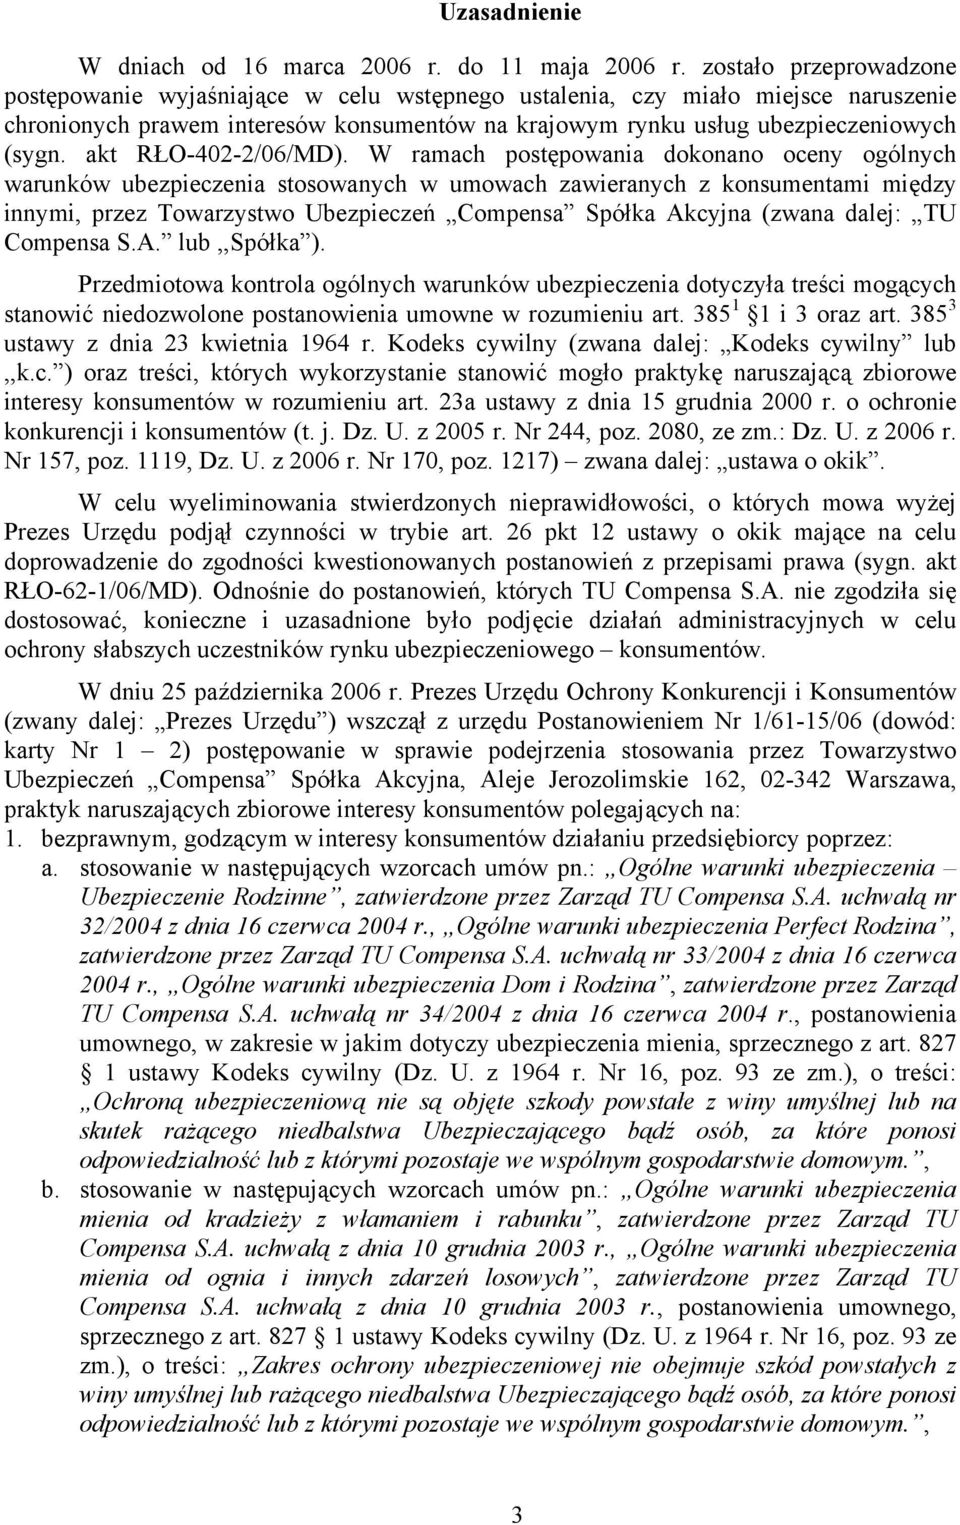 akt RŁO-402-2/06/MD).